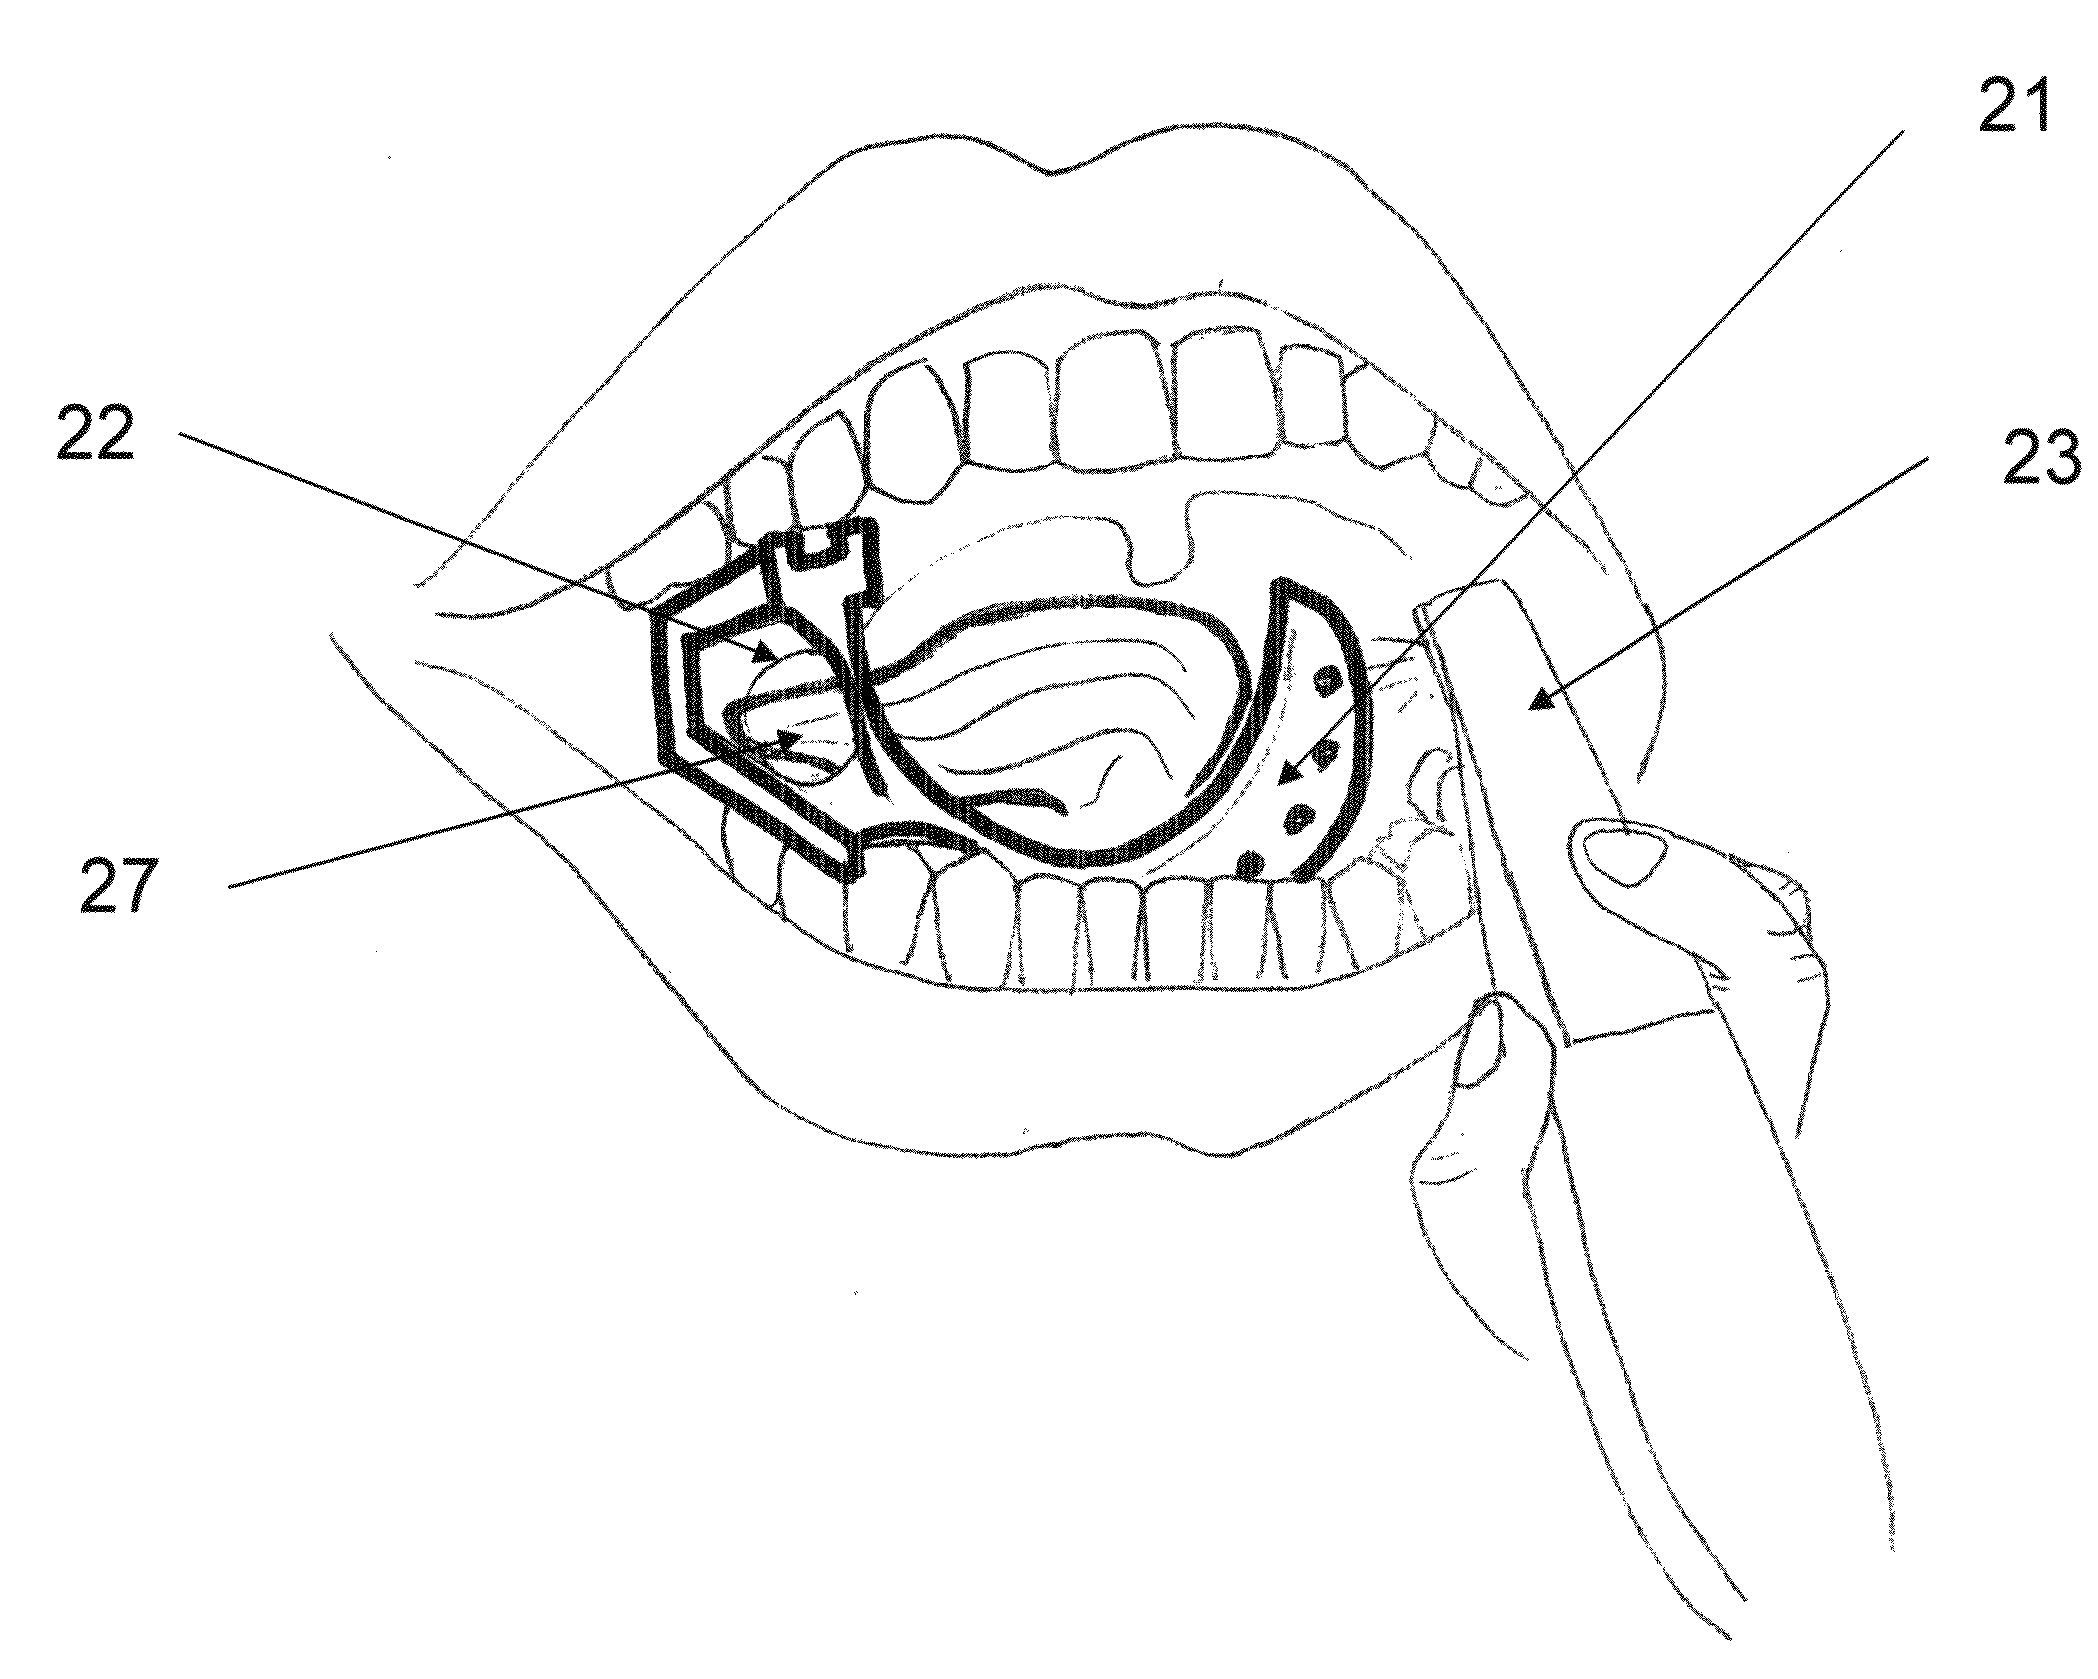 Tongue block